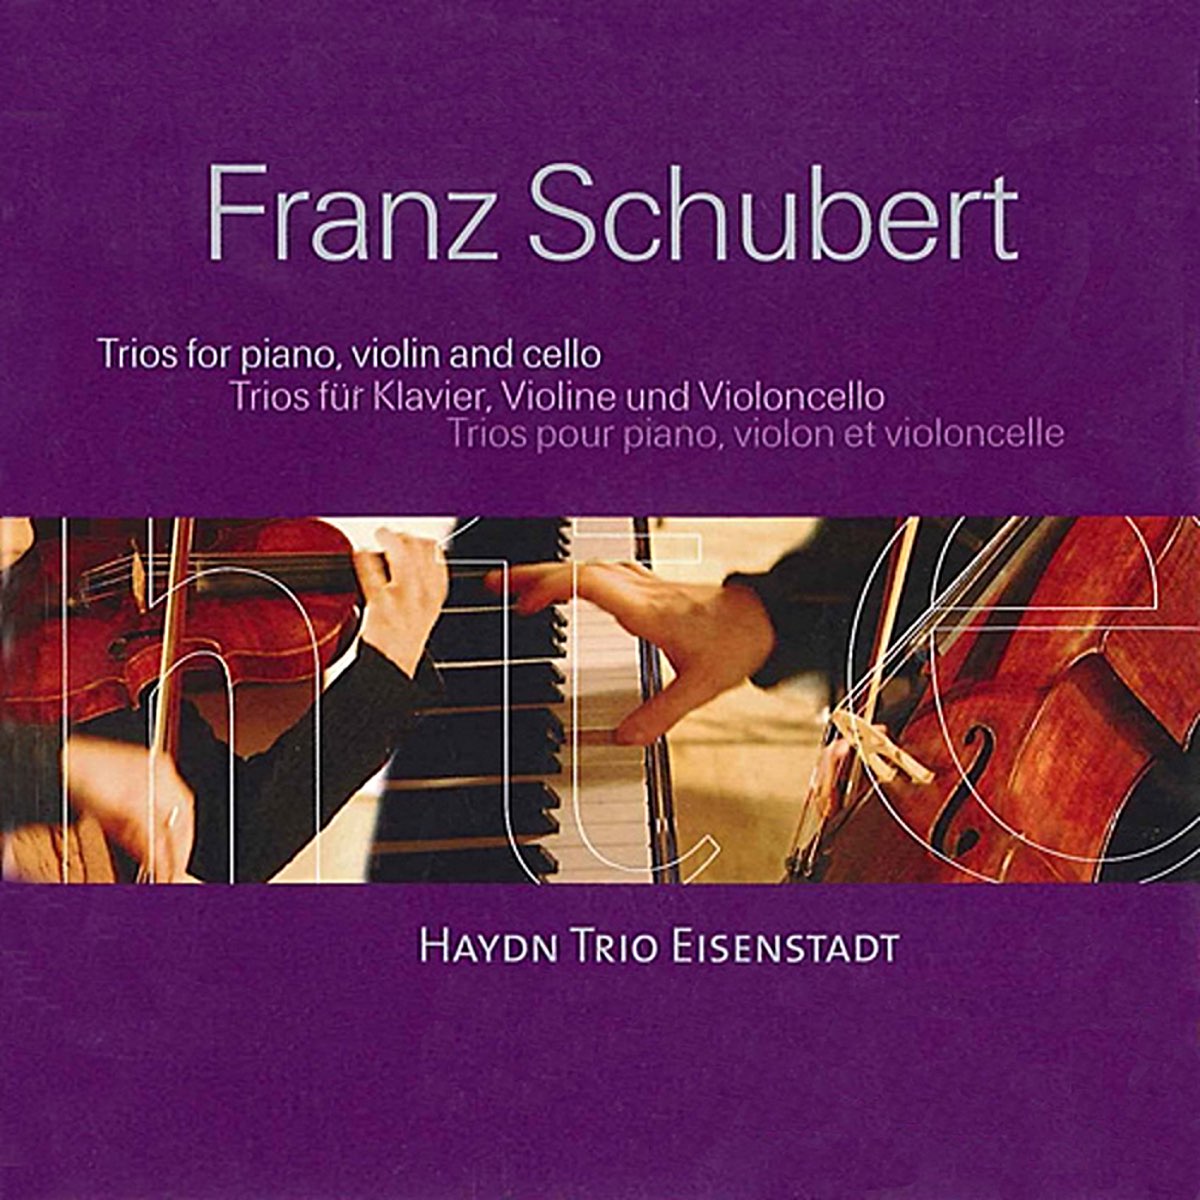 Schubert: The Piano Trios - Album by Haydn Trio Eisenstadt - Apple Music